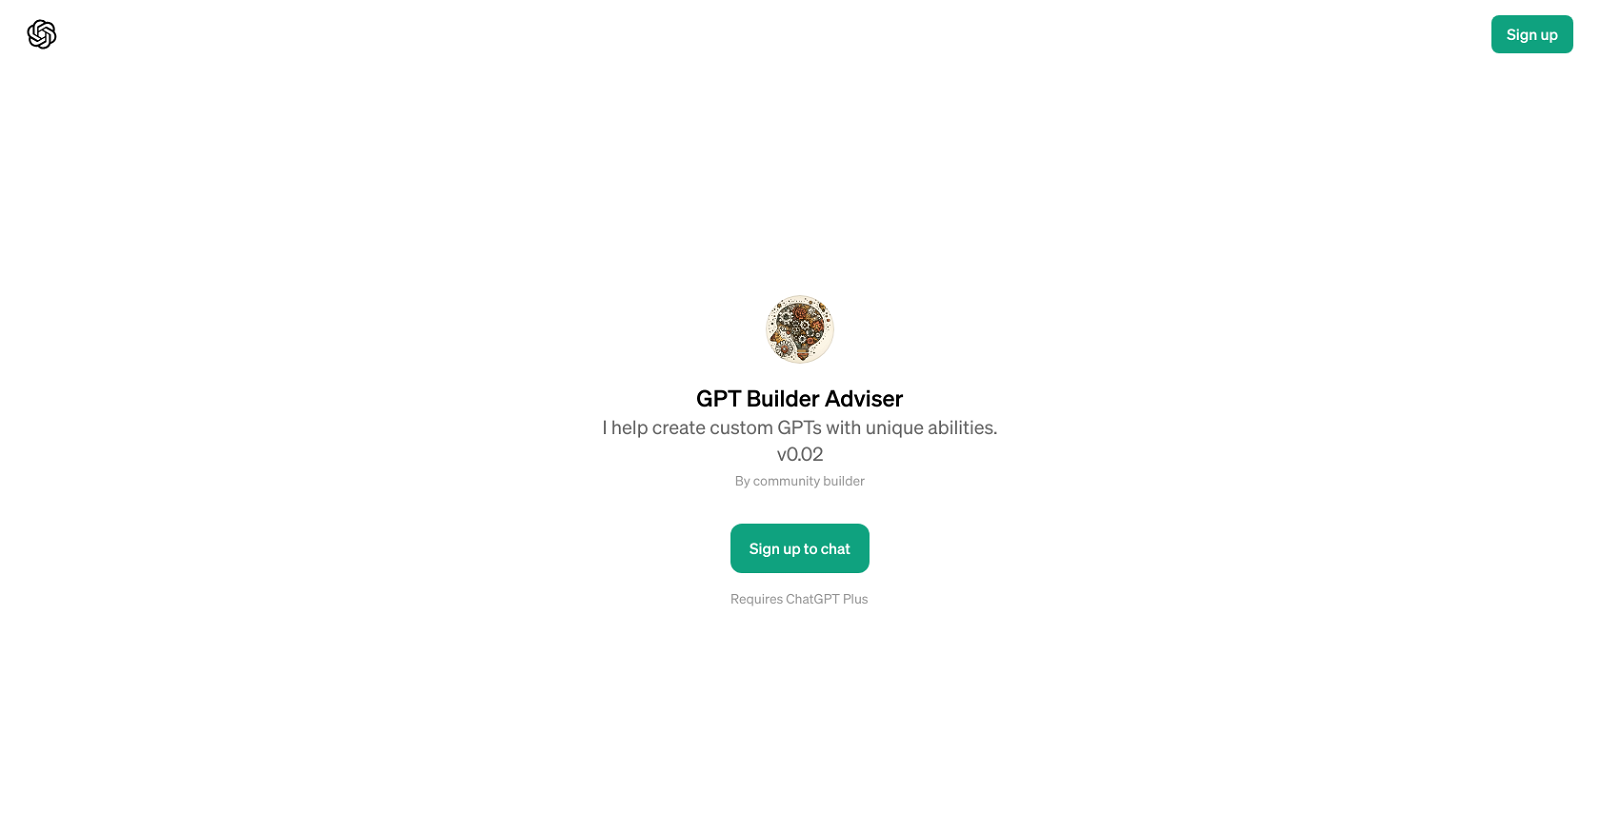 GPT Builder Adviser website